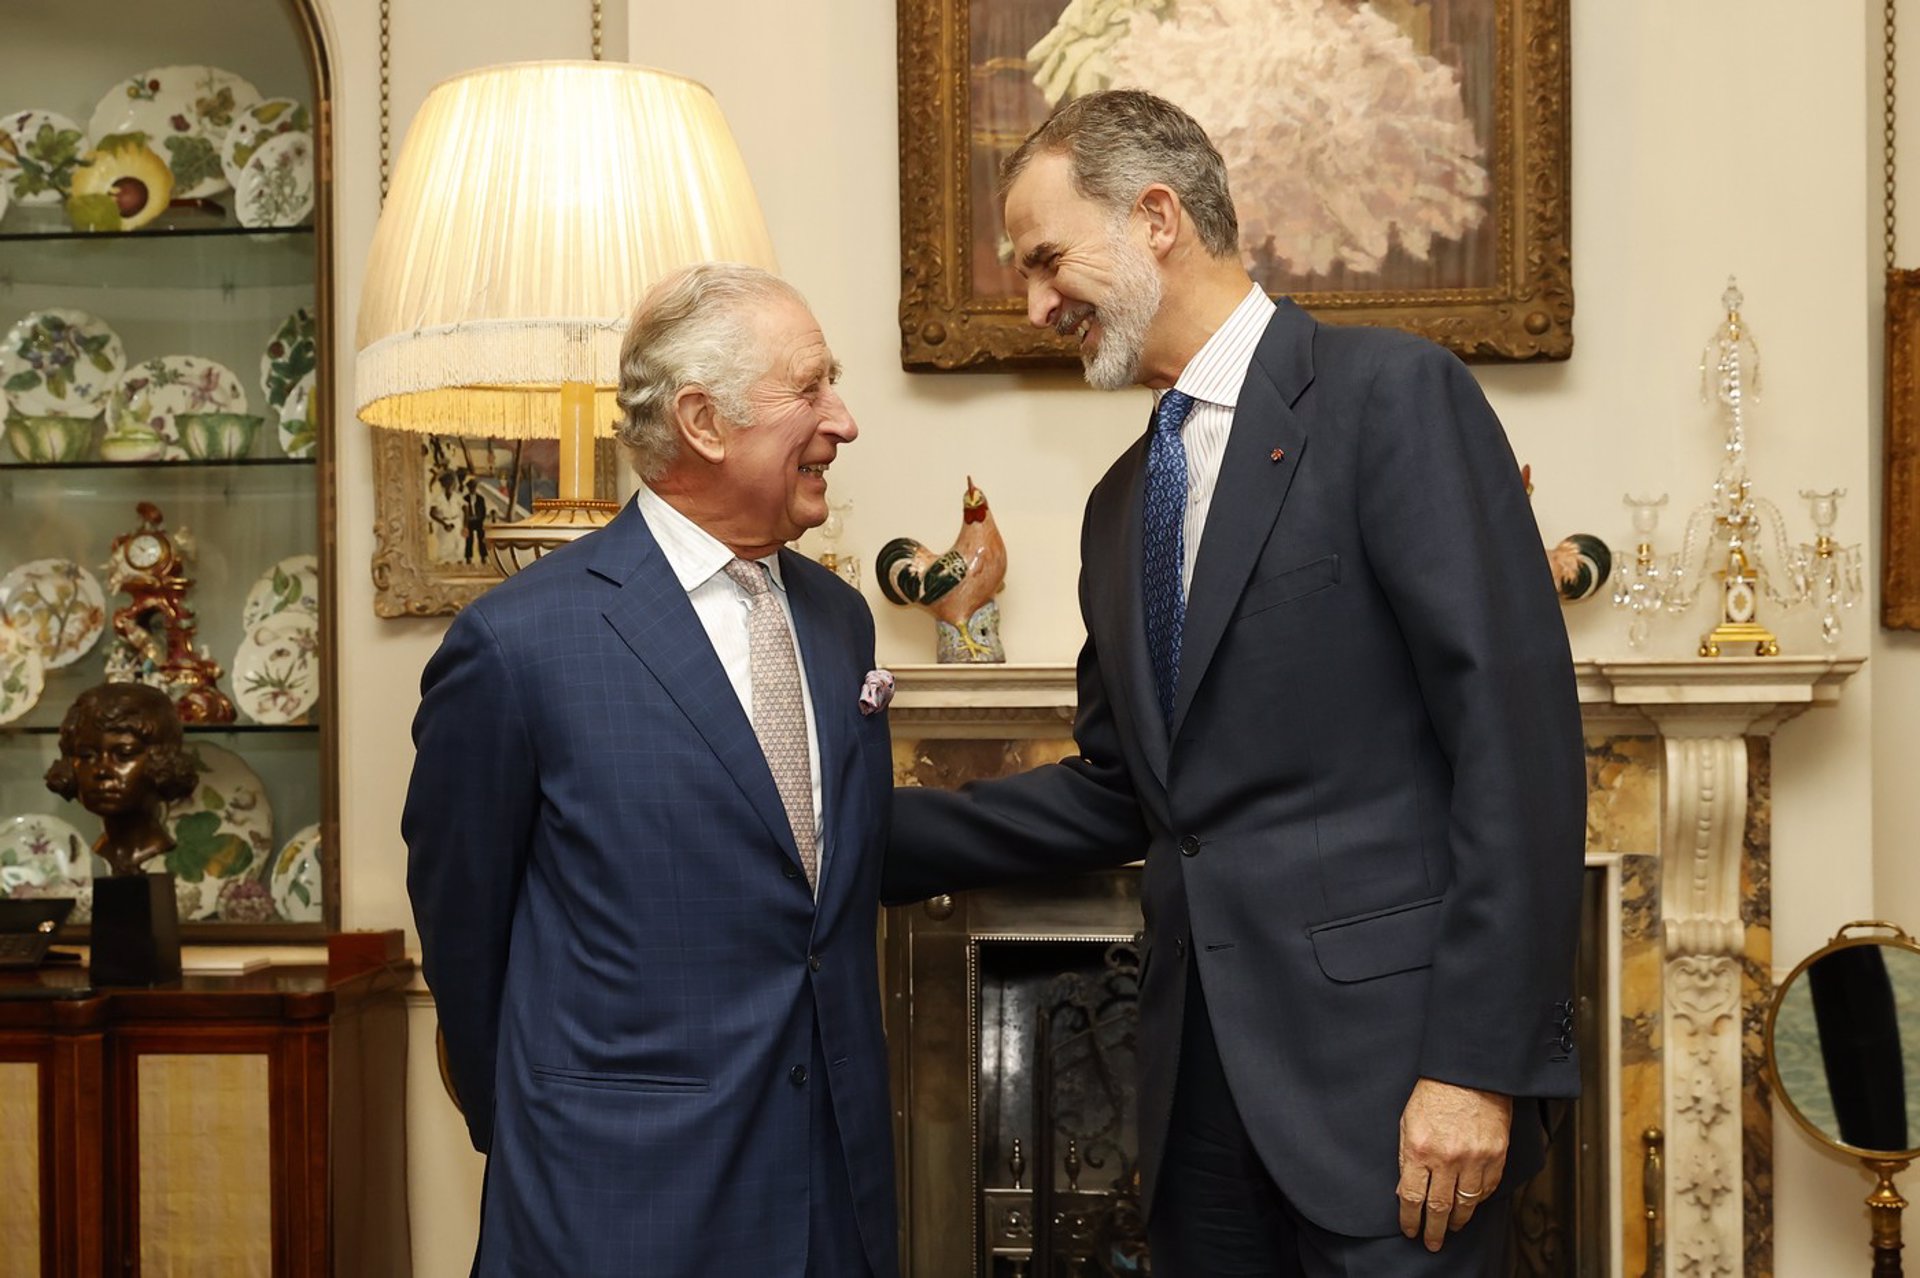 Sonrisas y cordialidad en la primera reunión de Carlos III y Felipe VI